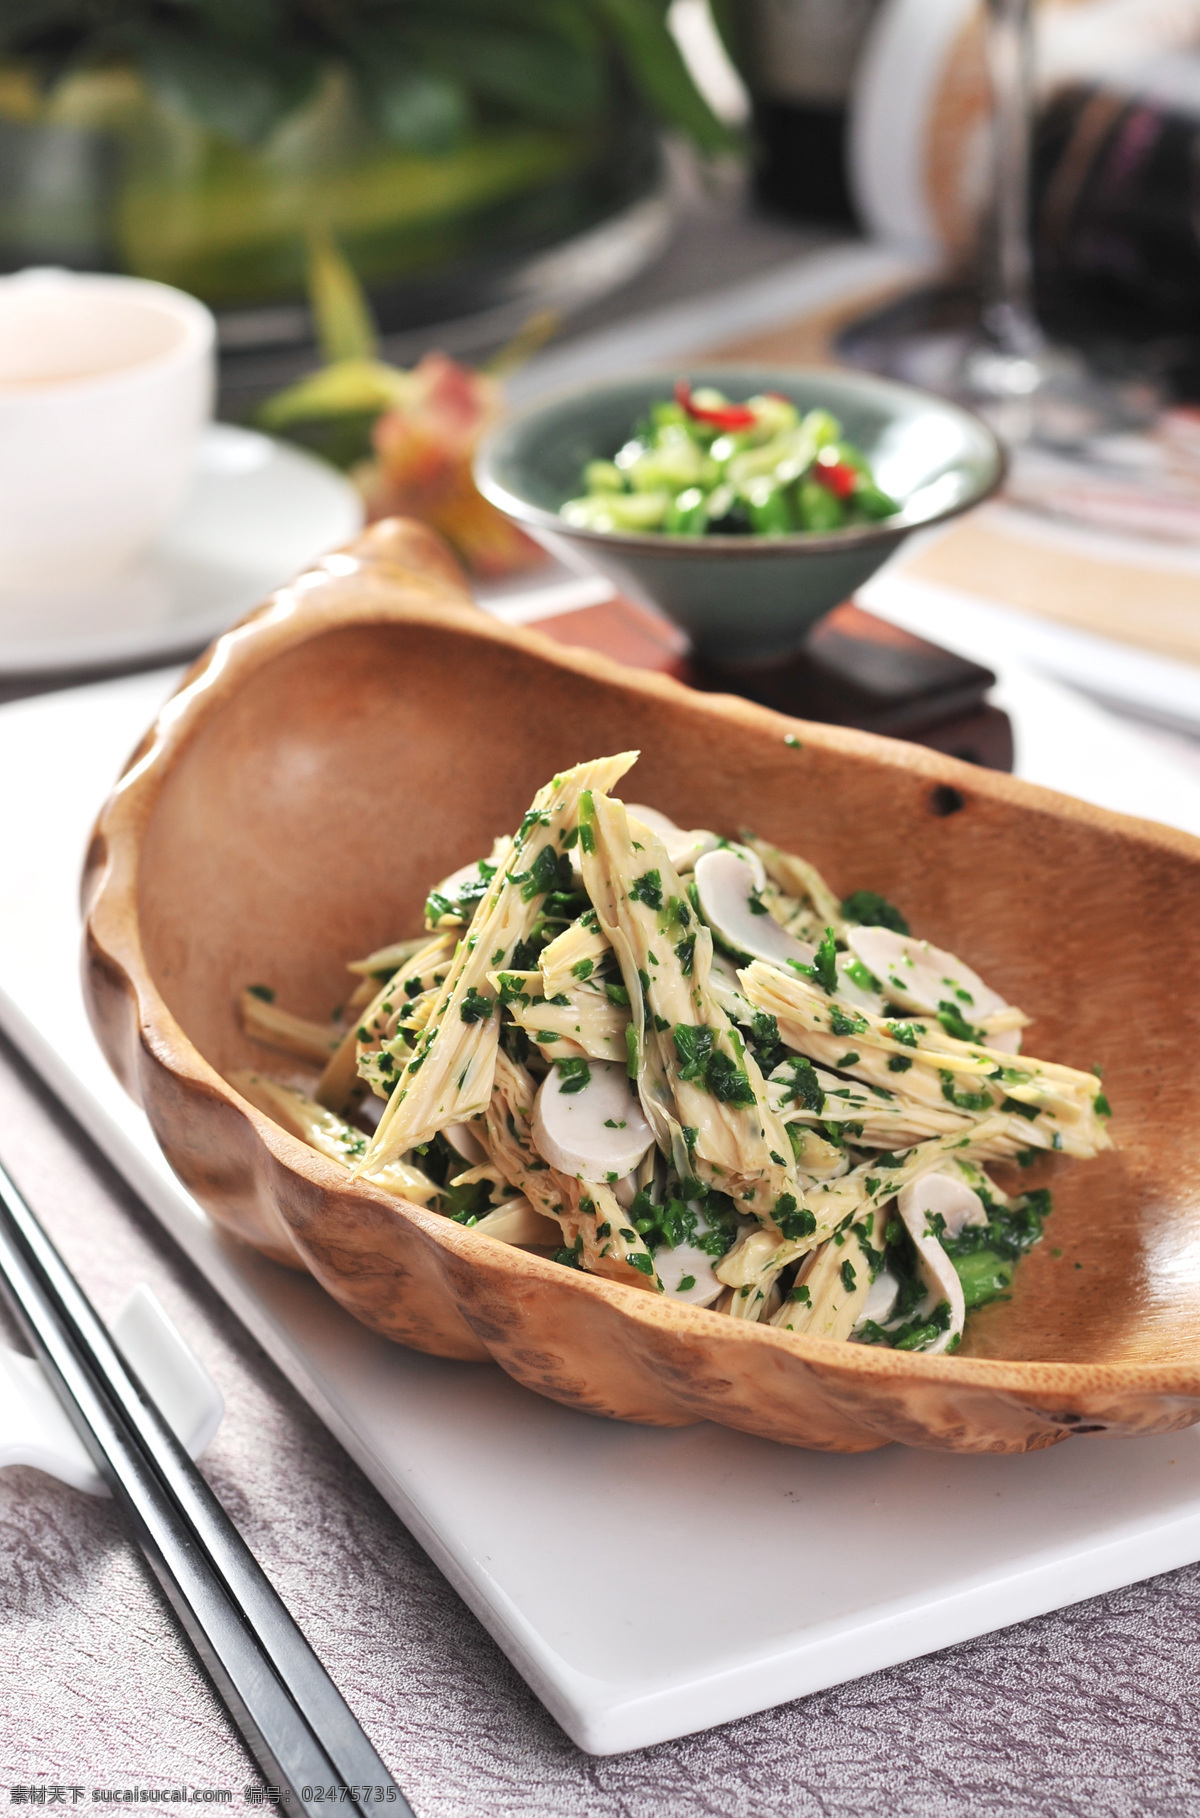 腐竹炝蘑菇 菜照 餐饮 美食 摄像图 传统美食 餐饮美食